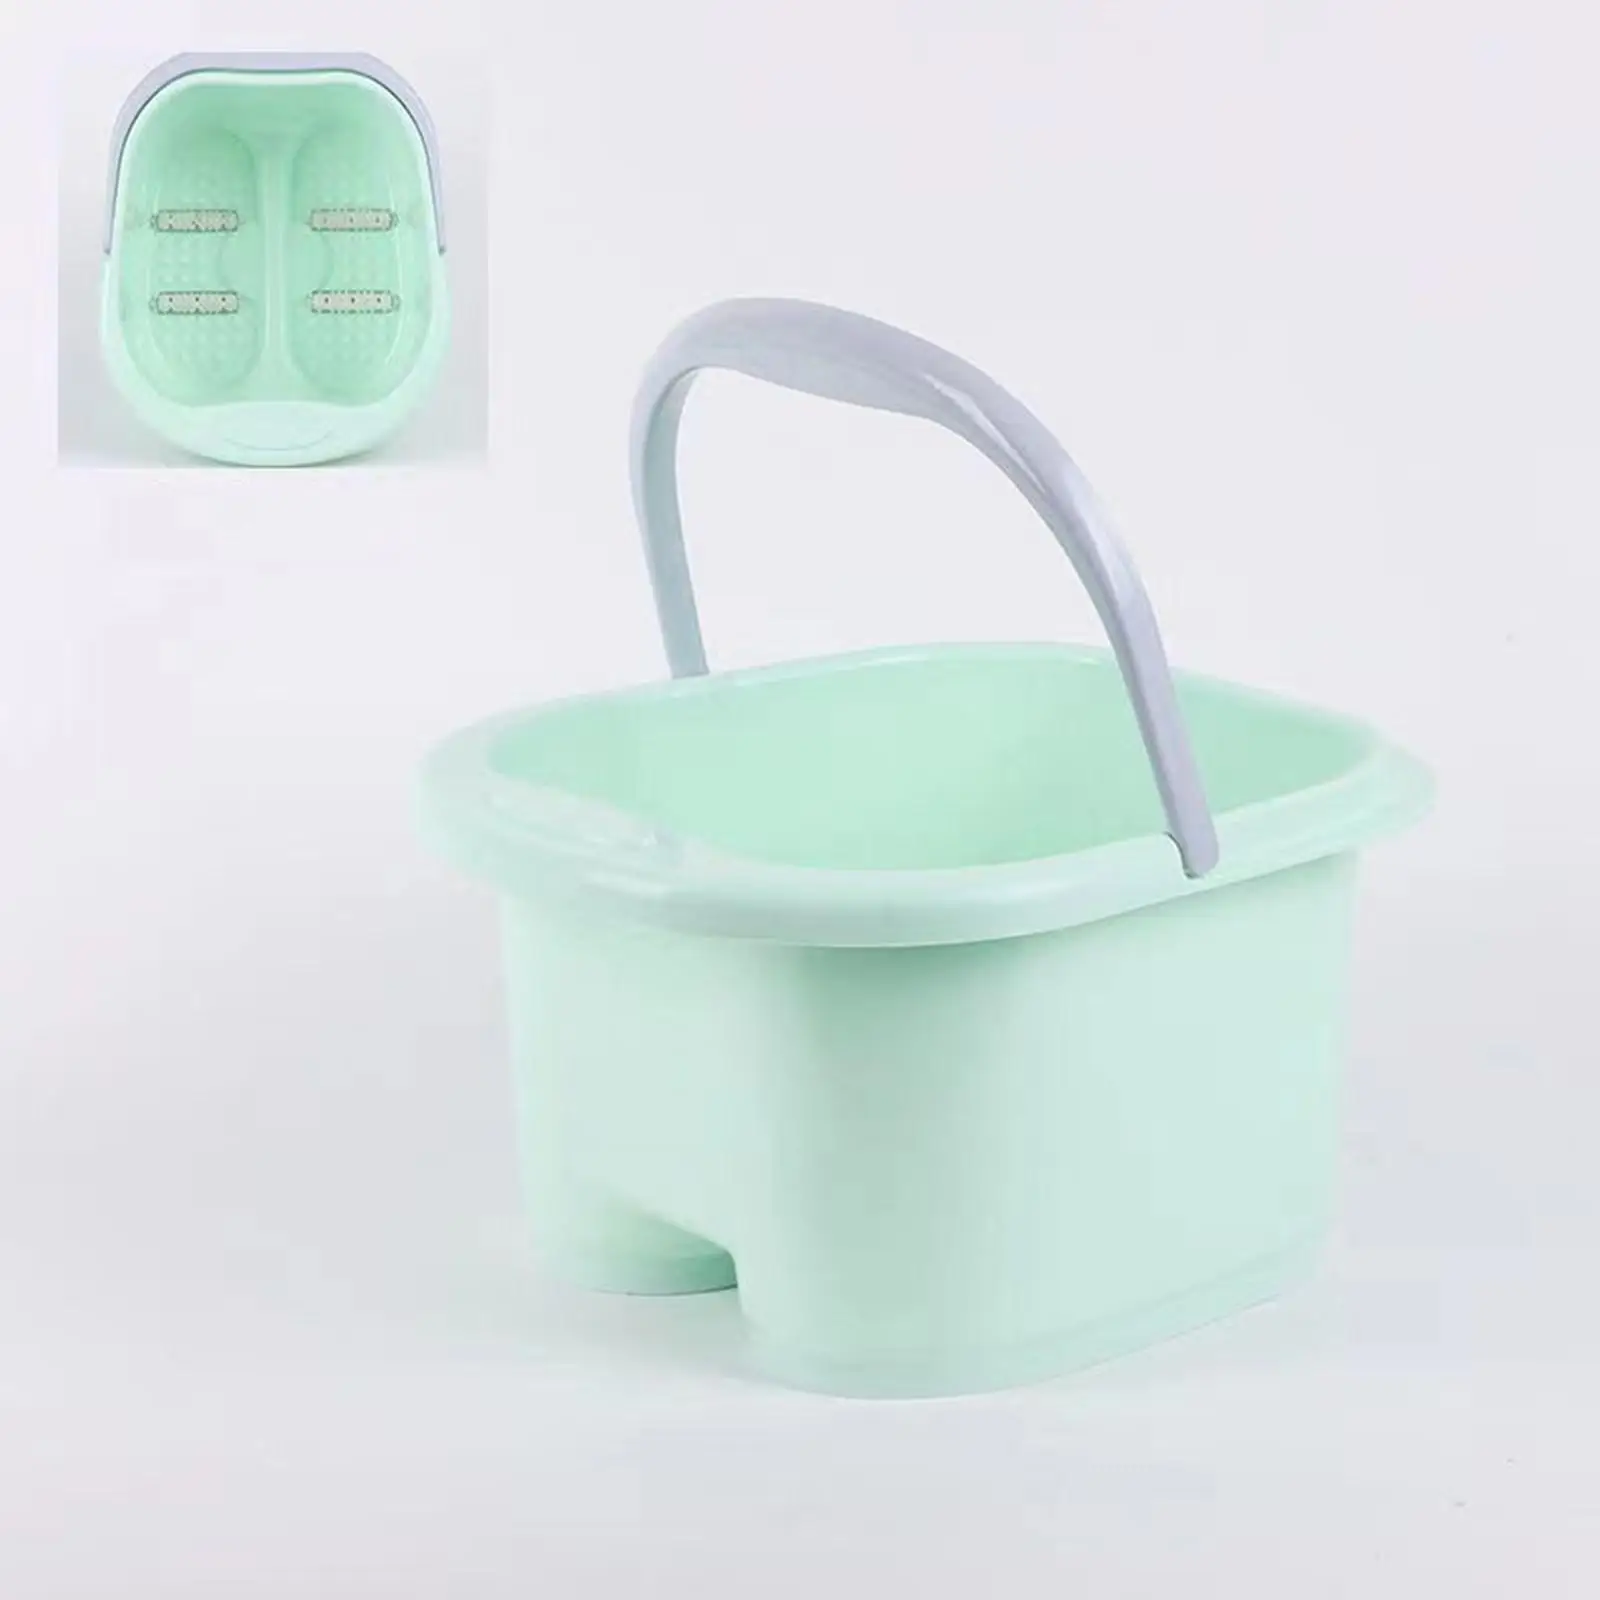 Foot Soaking Bath Basin, Foot Massage Foot Soaker Tub, Foot Soaking Tub, Foot Bath SPA Soak Tub for Soaking Feet